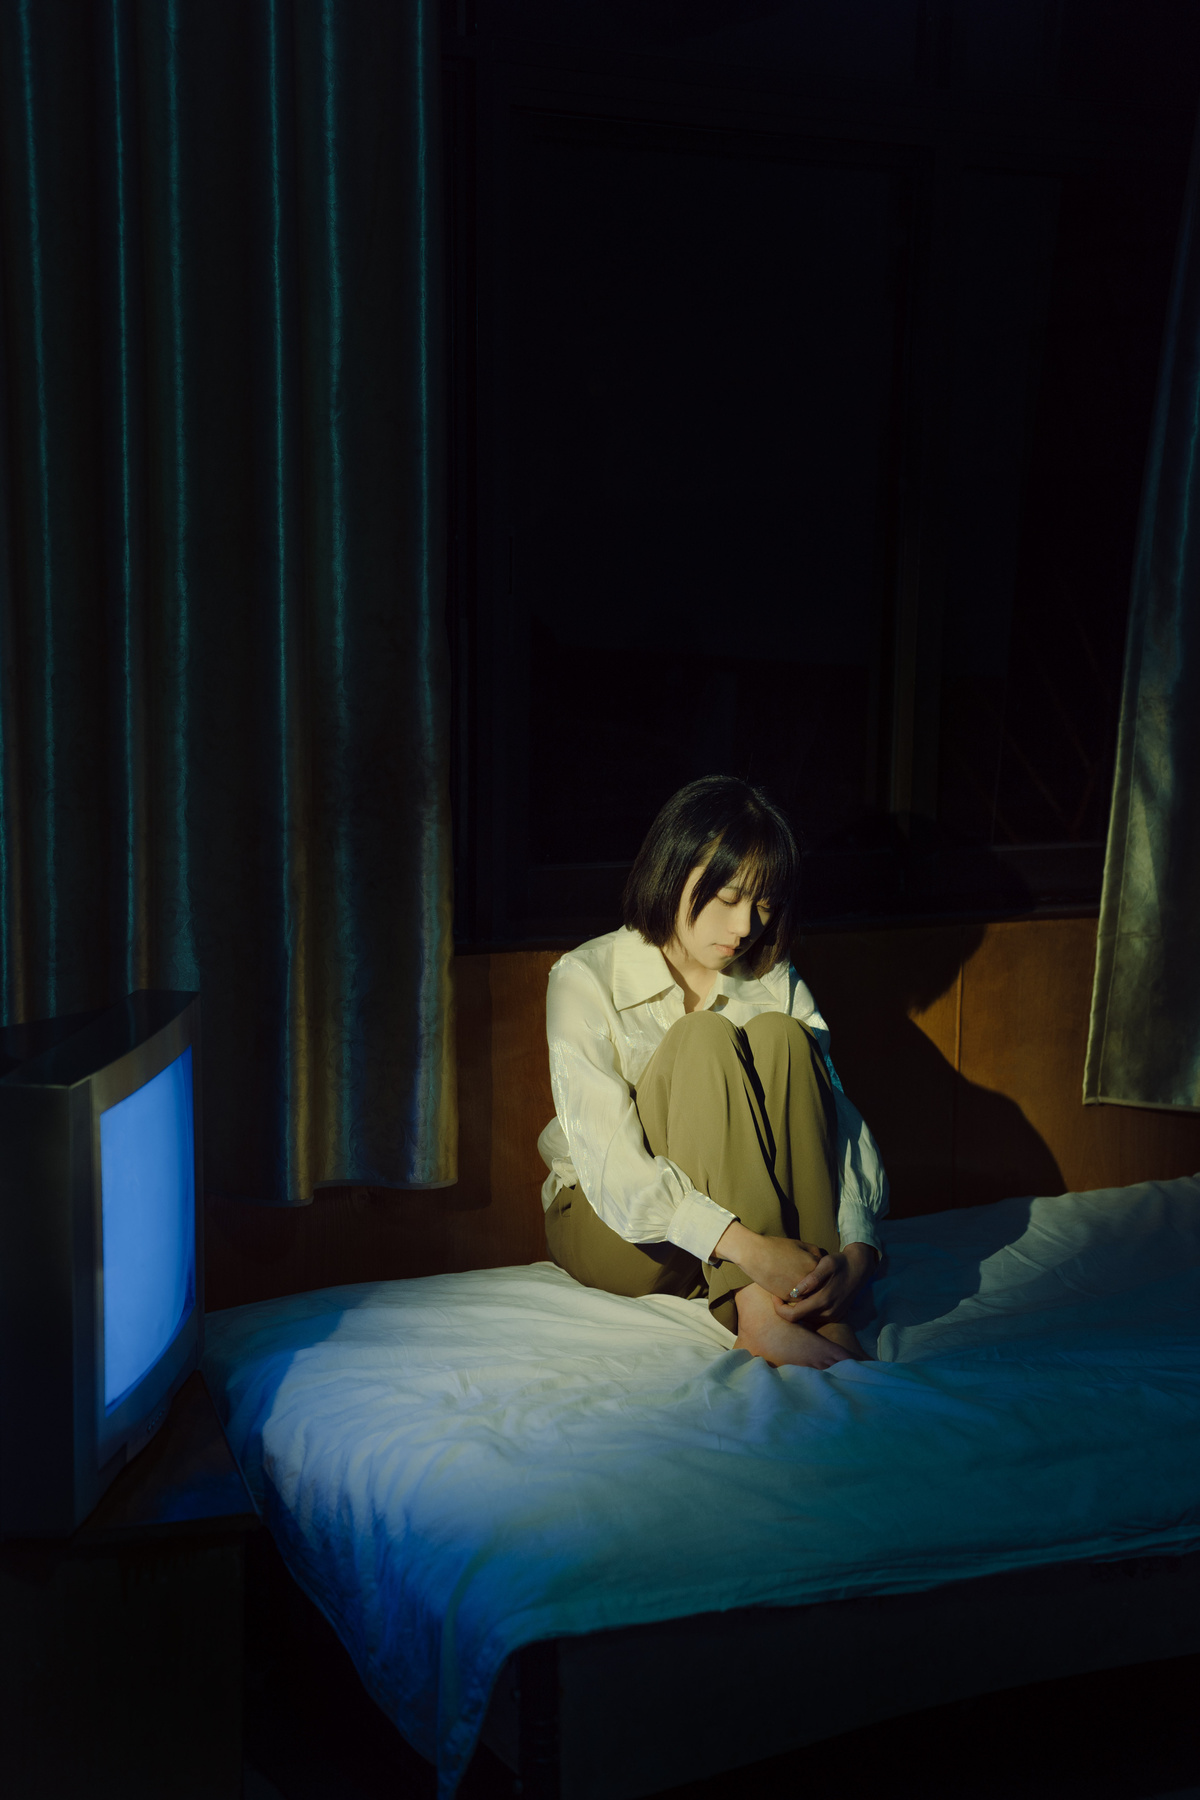 一个年轻女孩坐在一个黑暗的房间里 电视开着 另一个人也坐在床上。